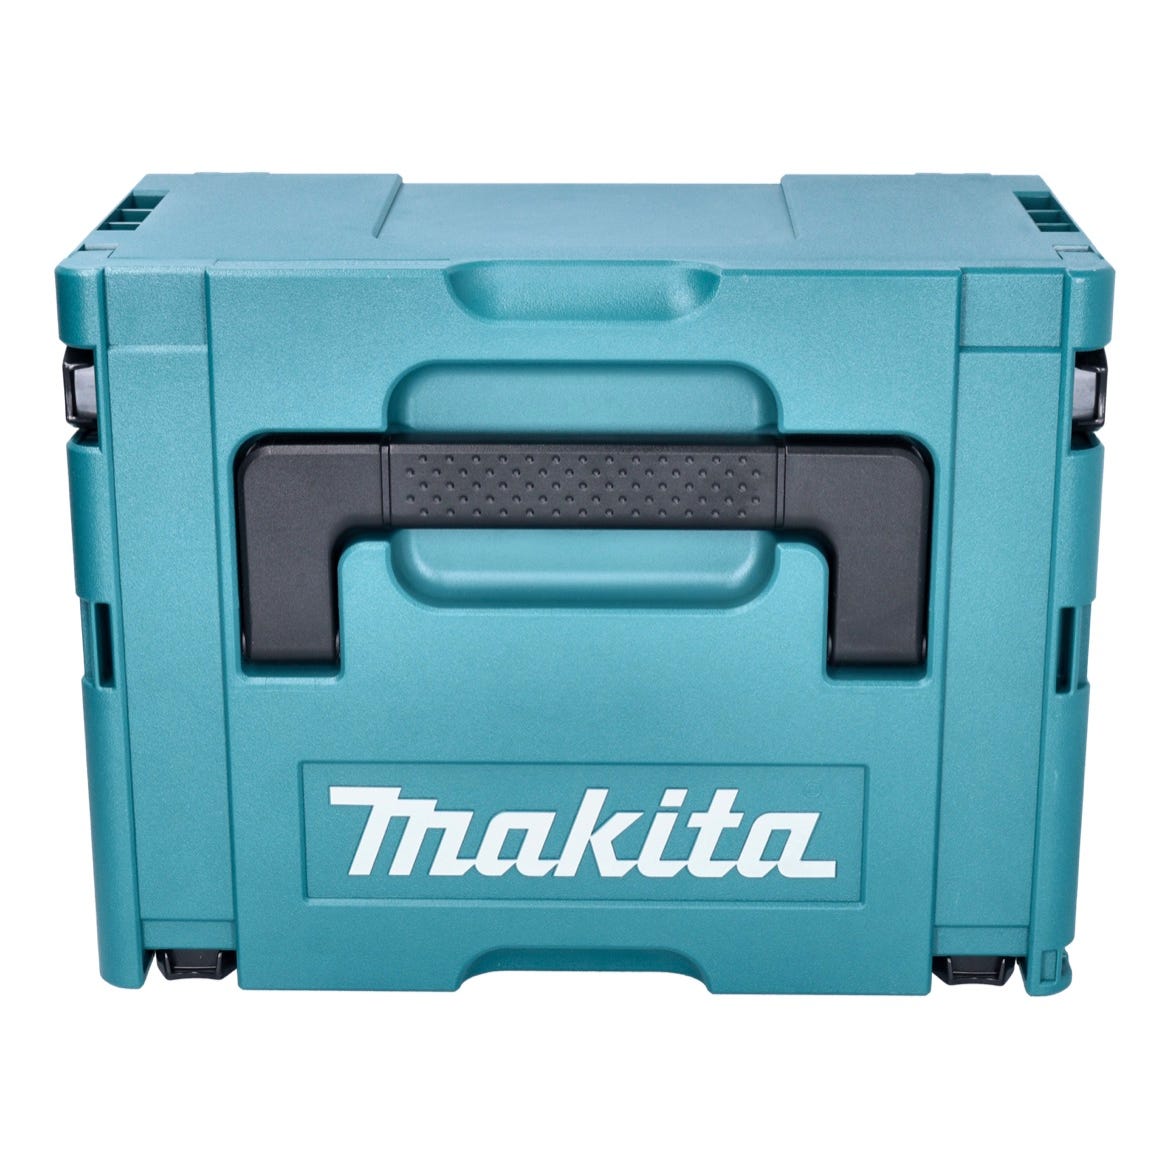 Makita DHR 183 F1J marteau perforateur sans fil 18 V 1,7 J SDS plus brushless + 1x batterie 3,0 Ah + Makpac - sans kit chargeur 2